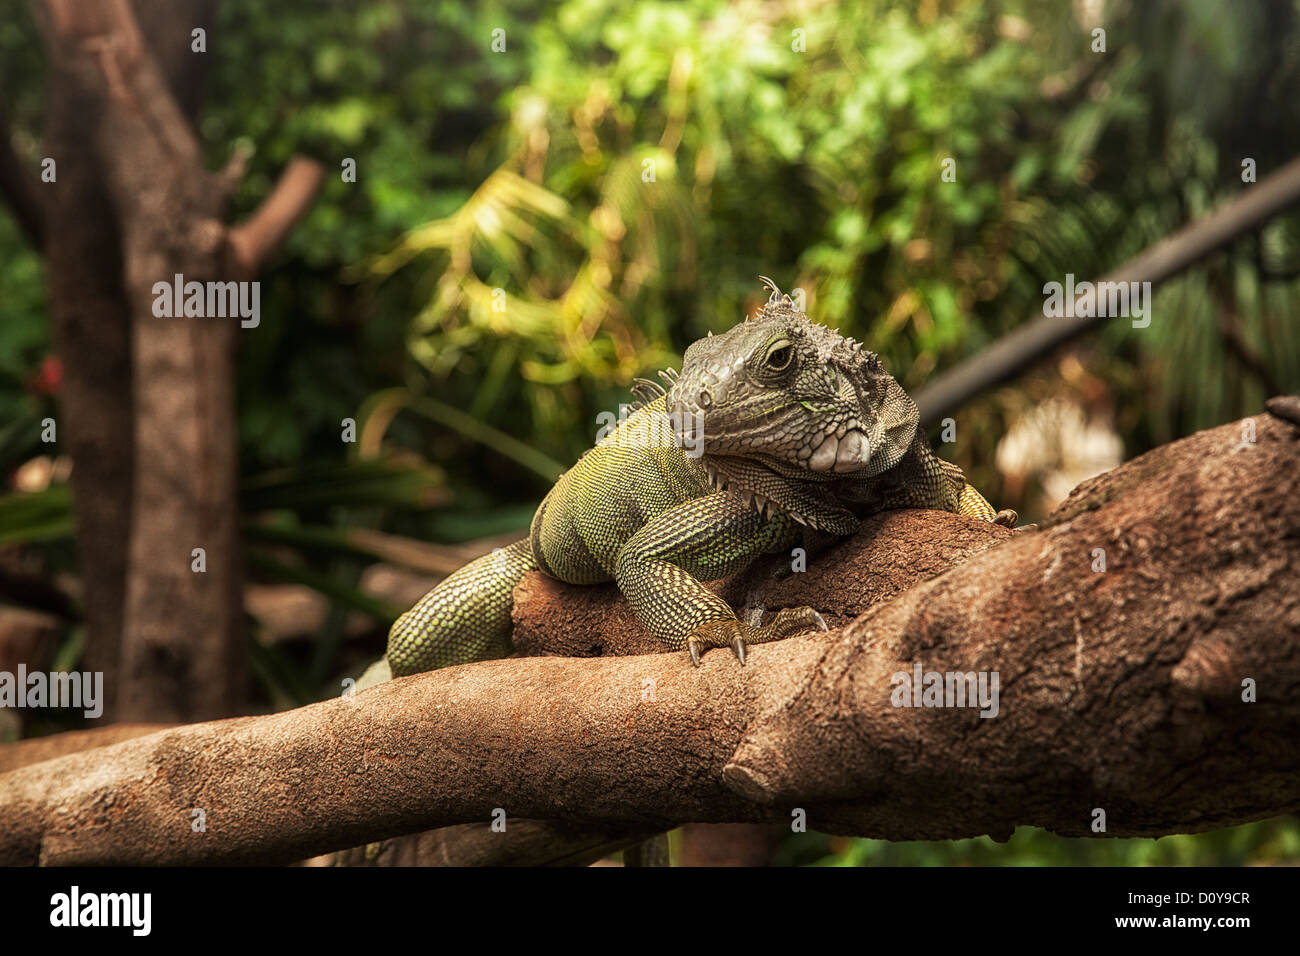 Iguana on a branch Stock Photo